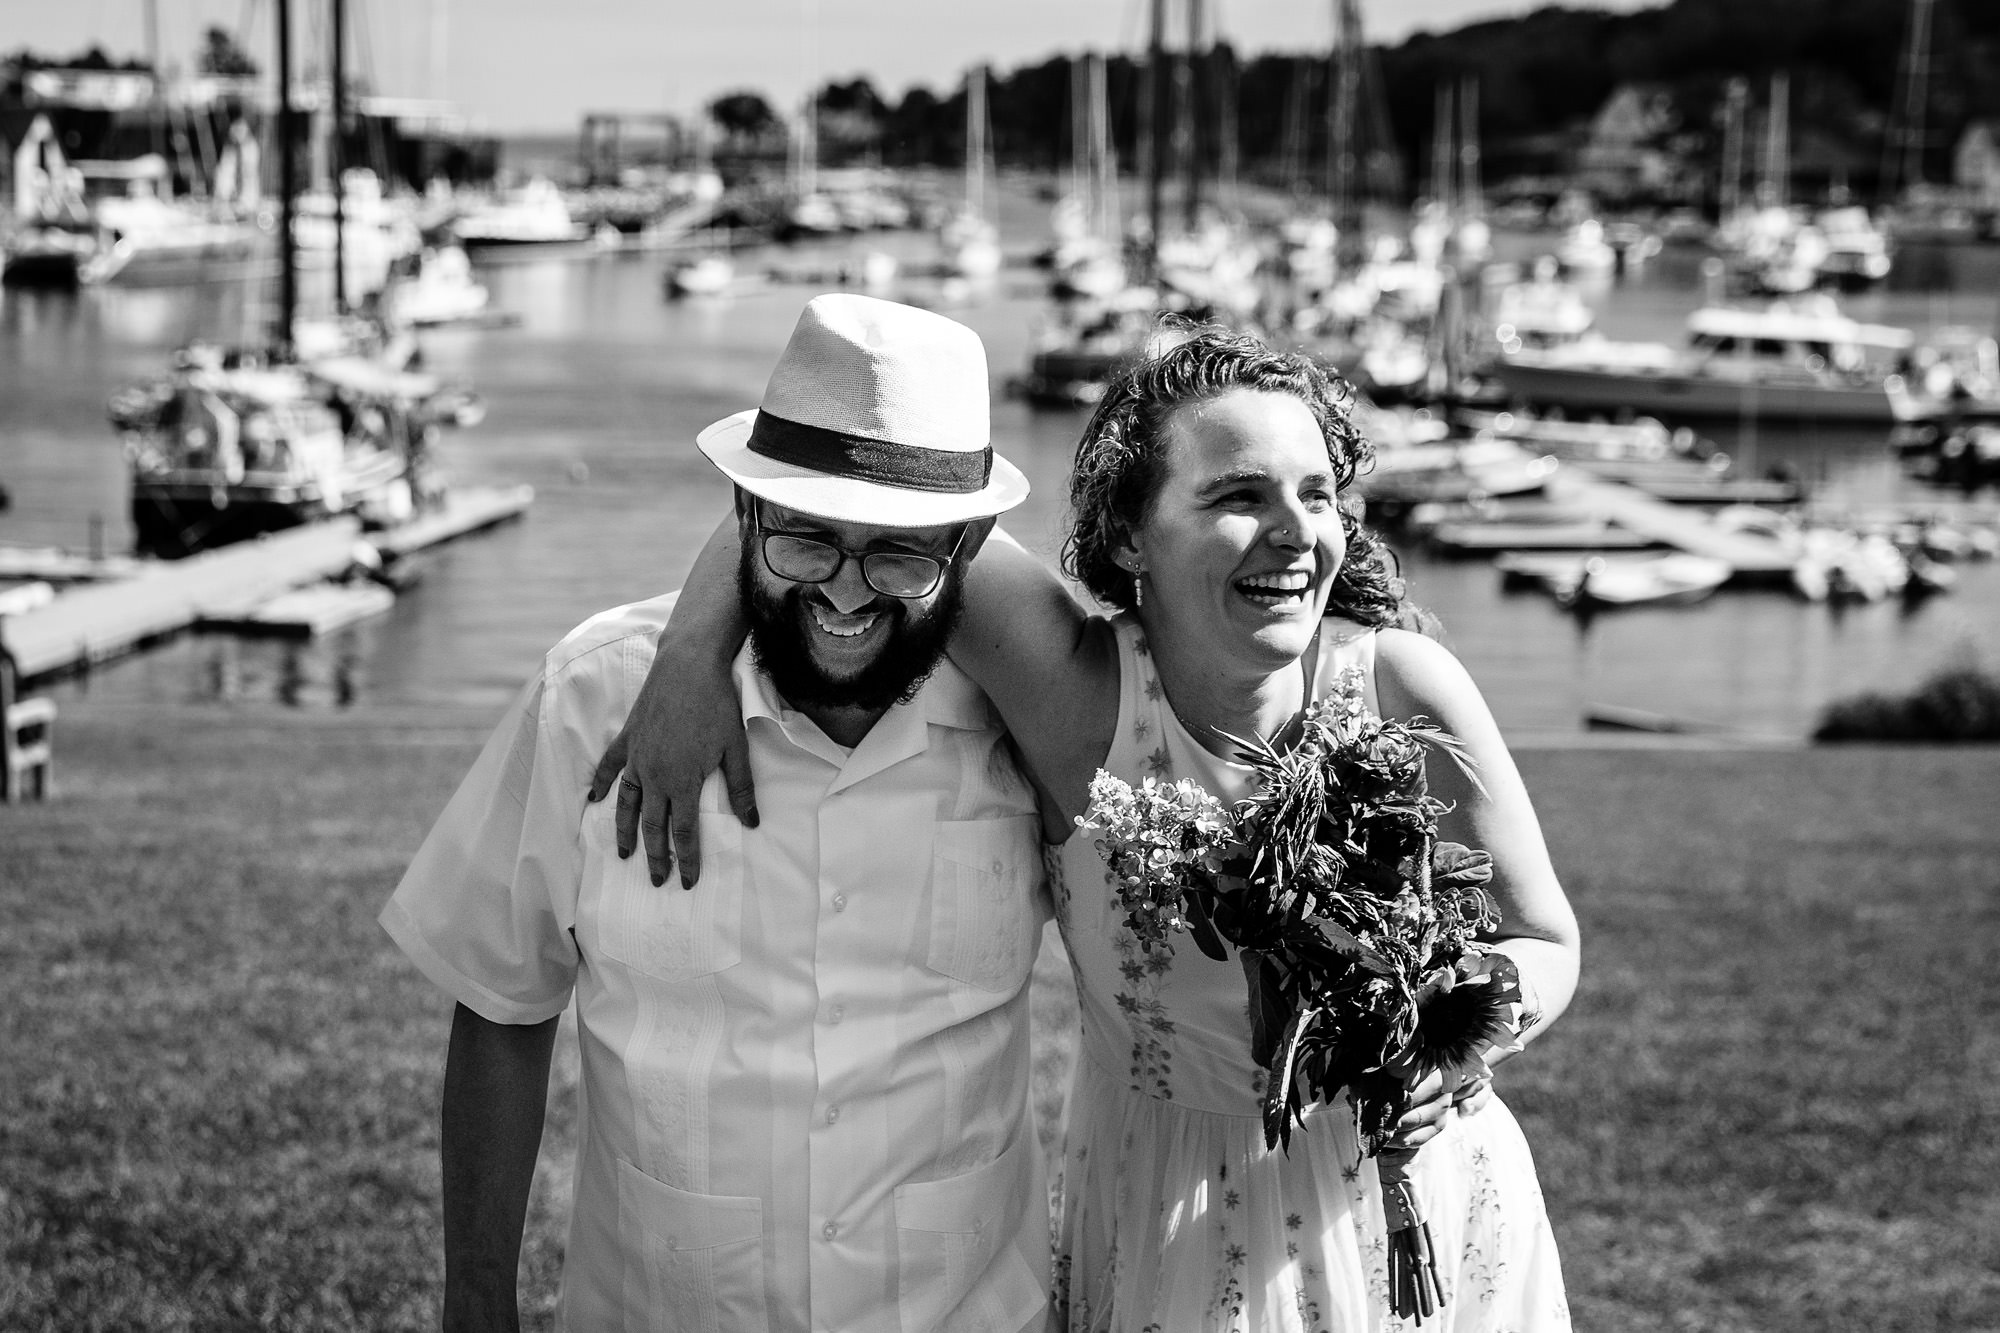 Wedding portraits taken around Camden, Maine